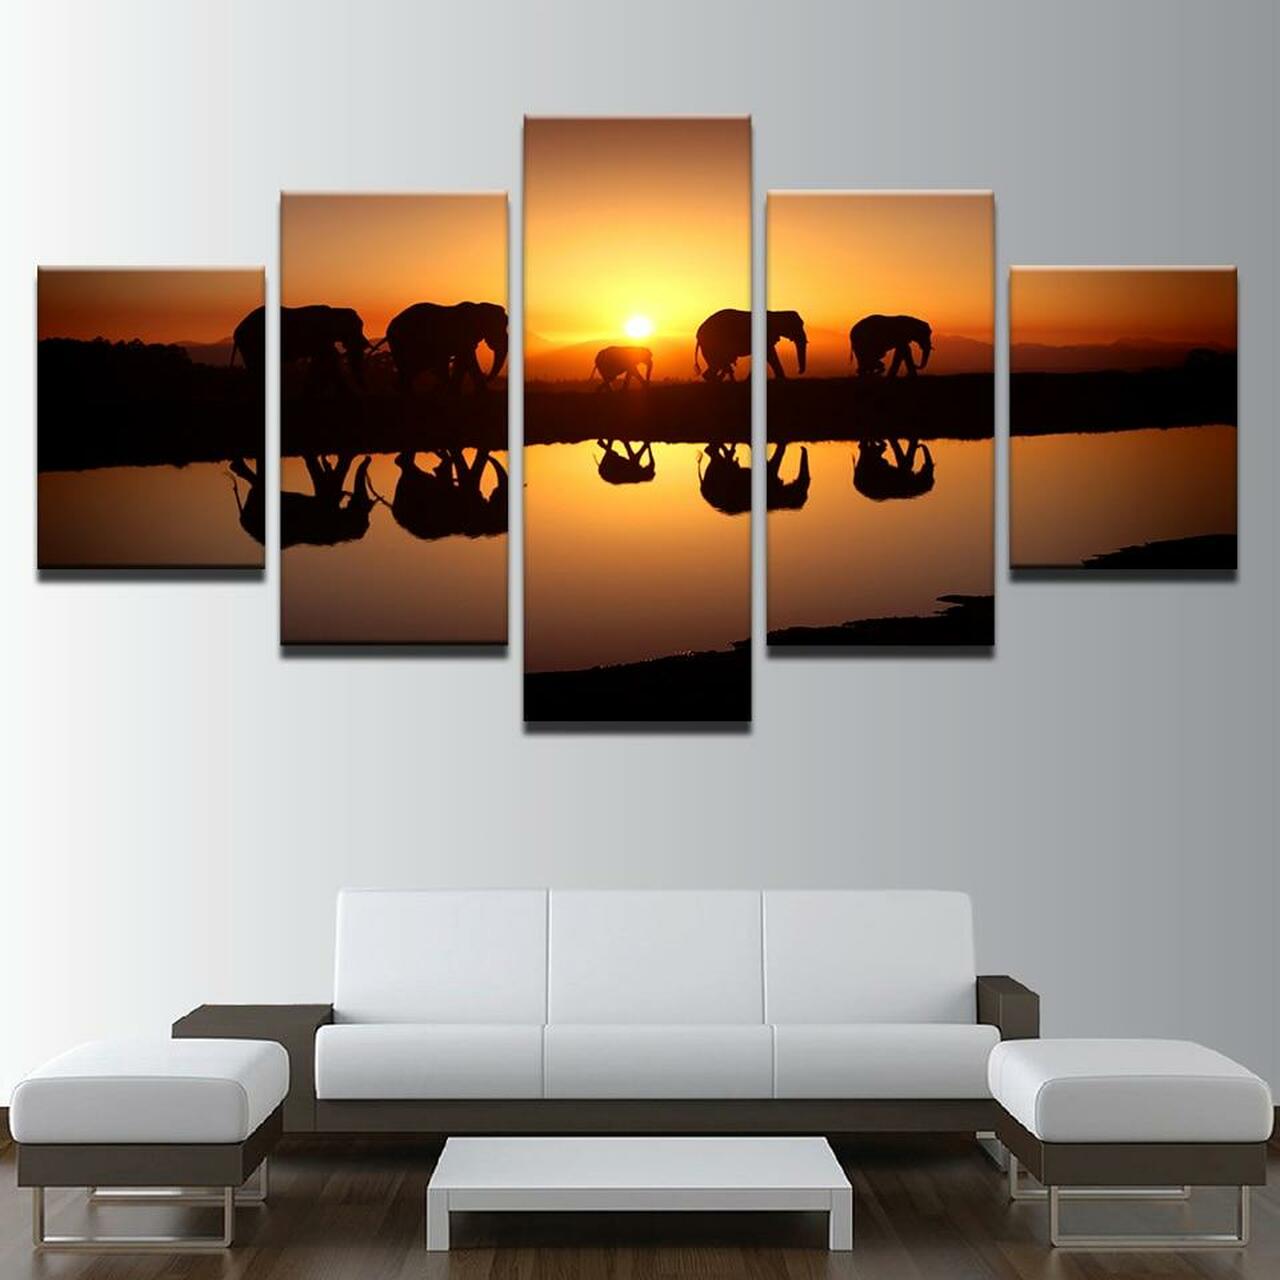 five elephants 5 pices peinture sur toile impression sur toile toile art pour la dcoration intrieureig2rf